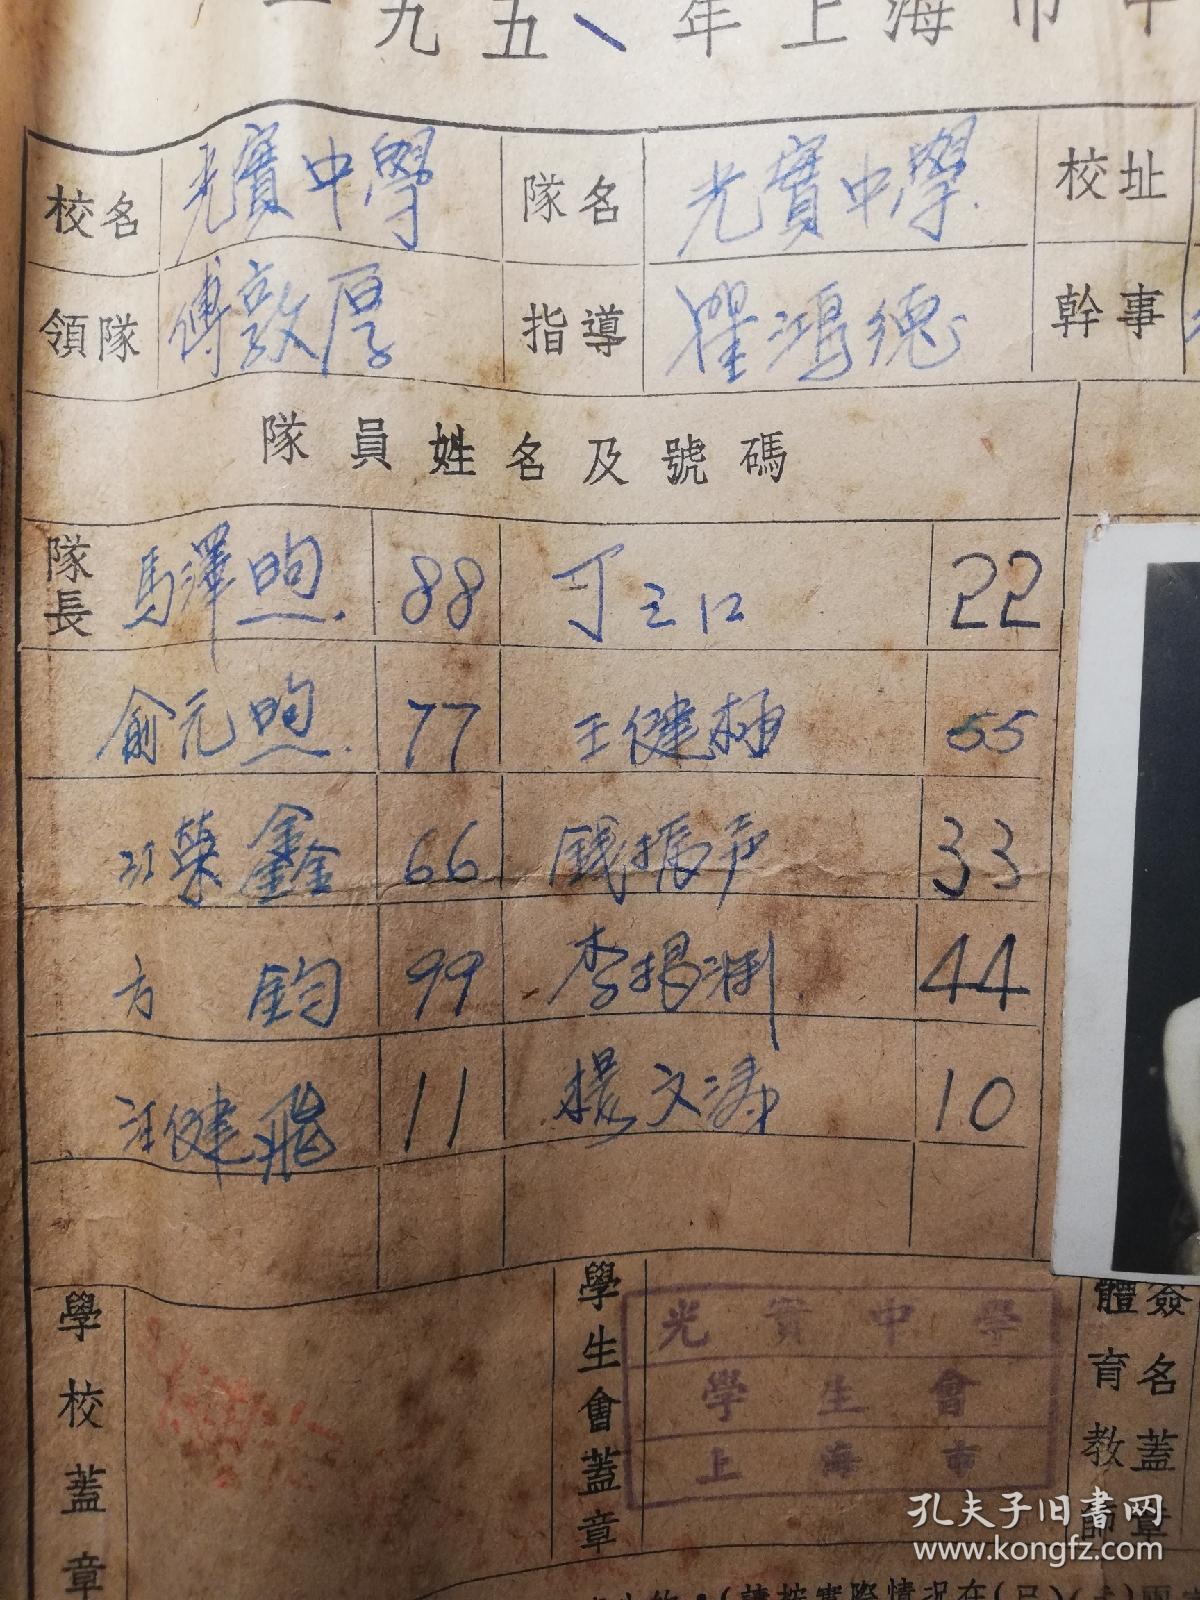 1951年光实中学（私立光华实验学校）篮球队合影，领队傅敦厚，队员有国内扣篮第一人俞元煦。中国第一代扣篮王。